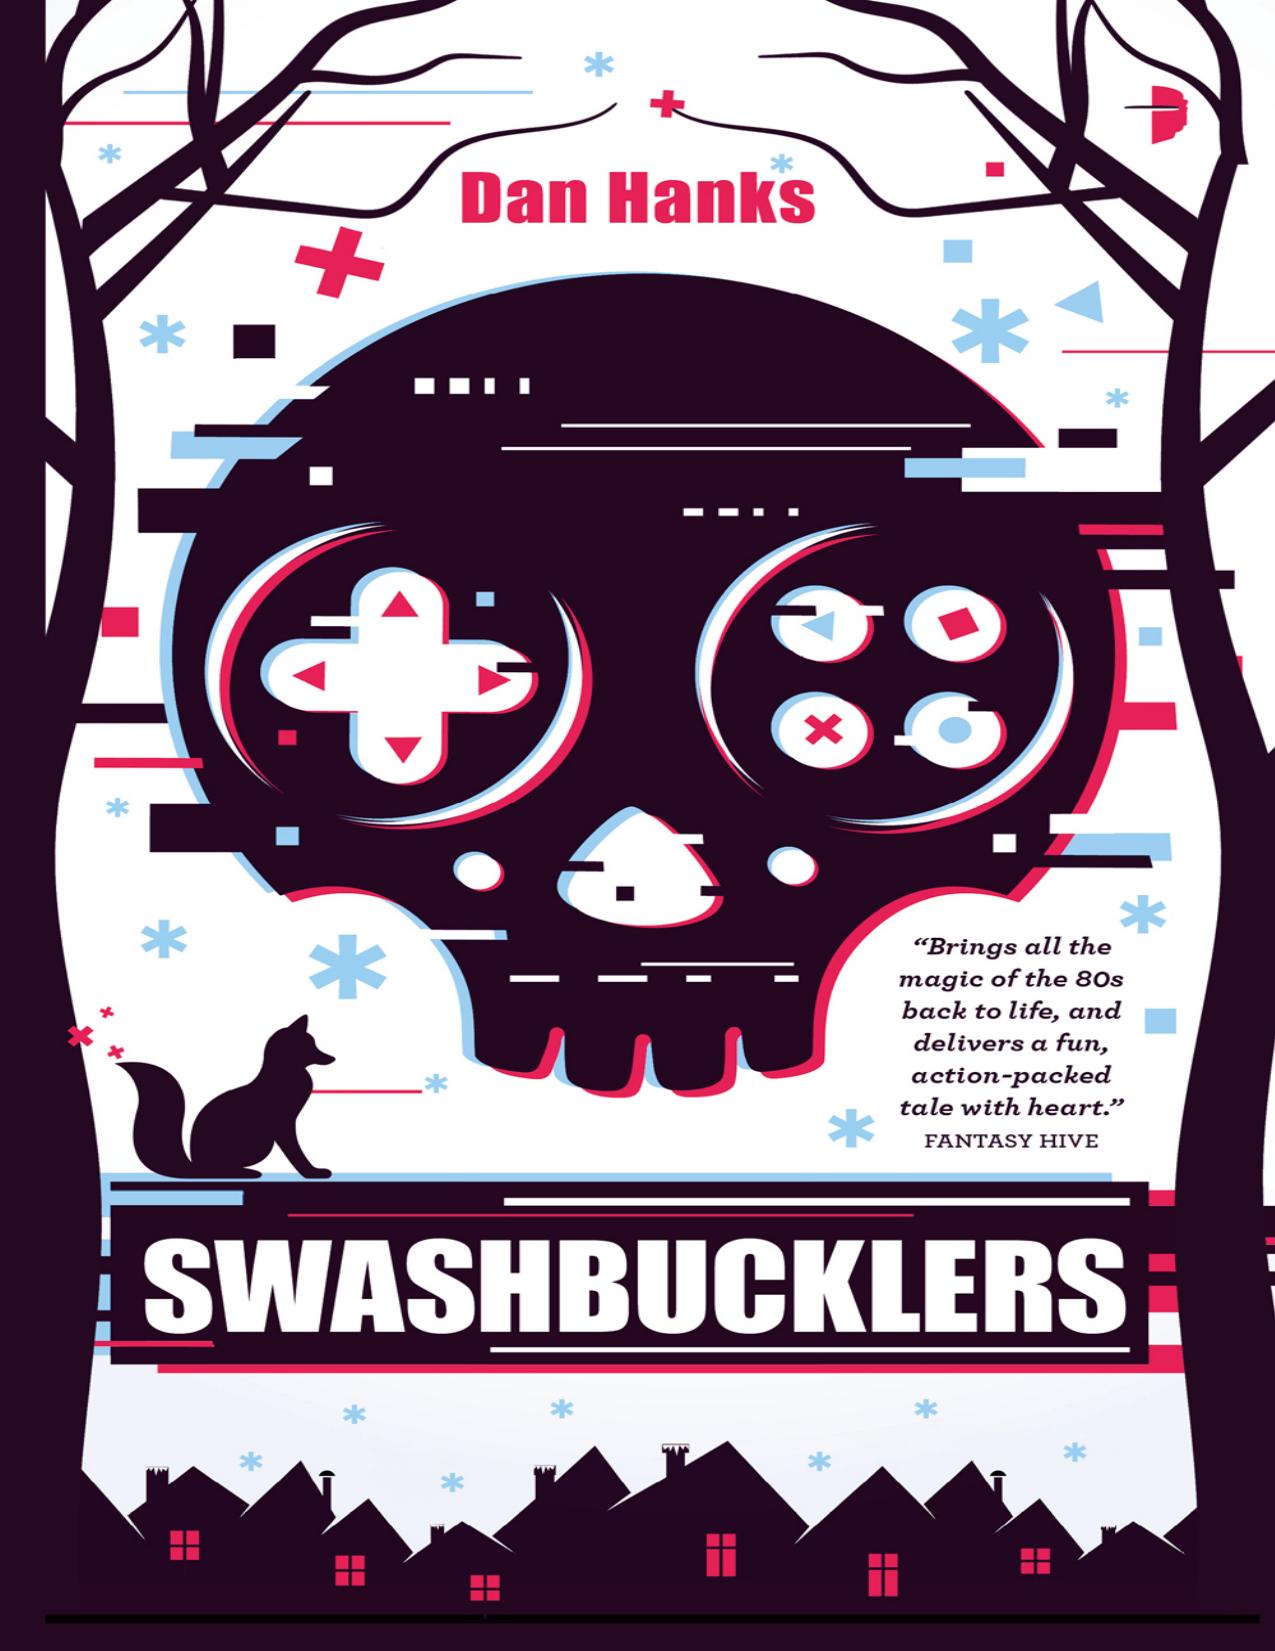 Swashbucklers by Dan Hanks